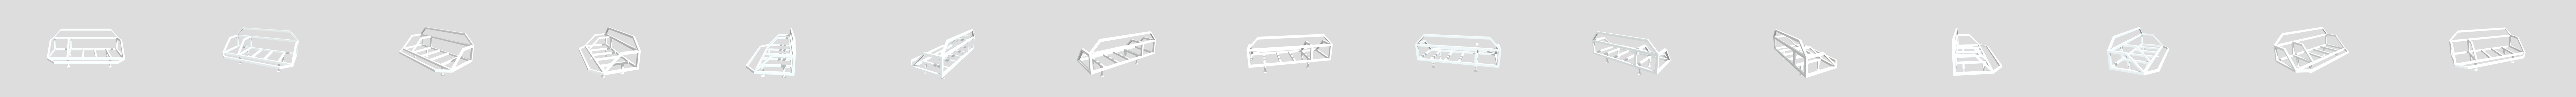 JetSki fishing rack - 3D model by Ozzymoto (@Ozzymoto) [e9599c4]